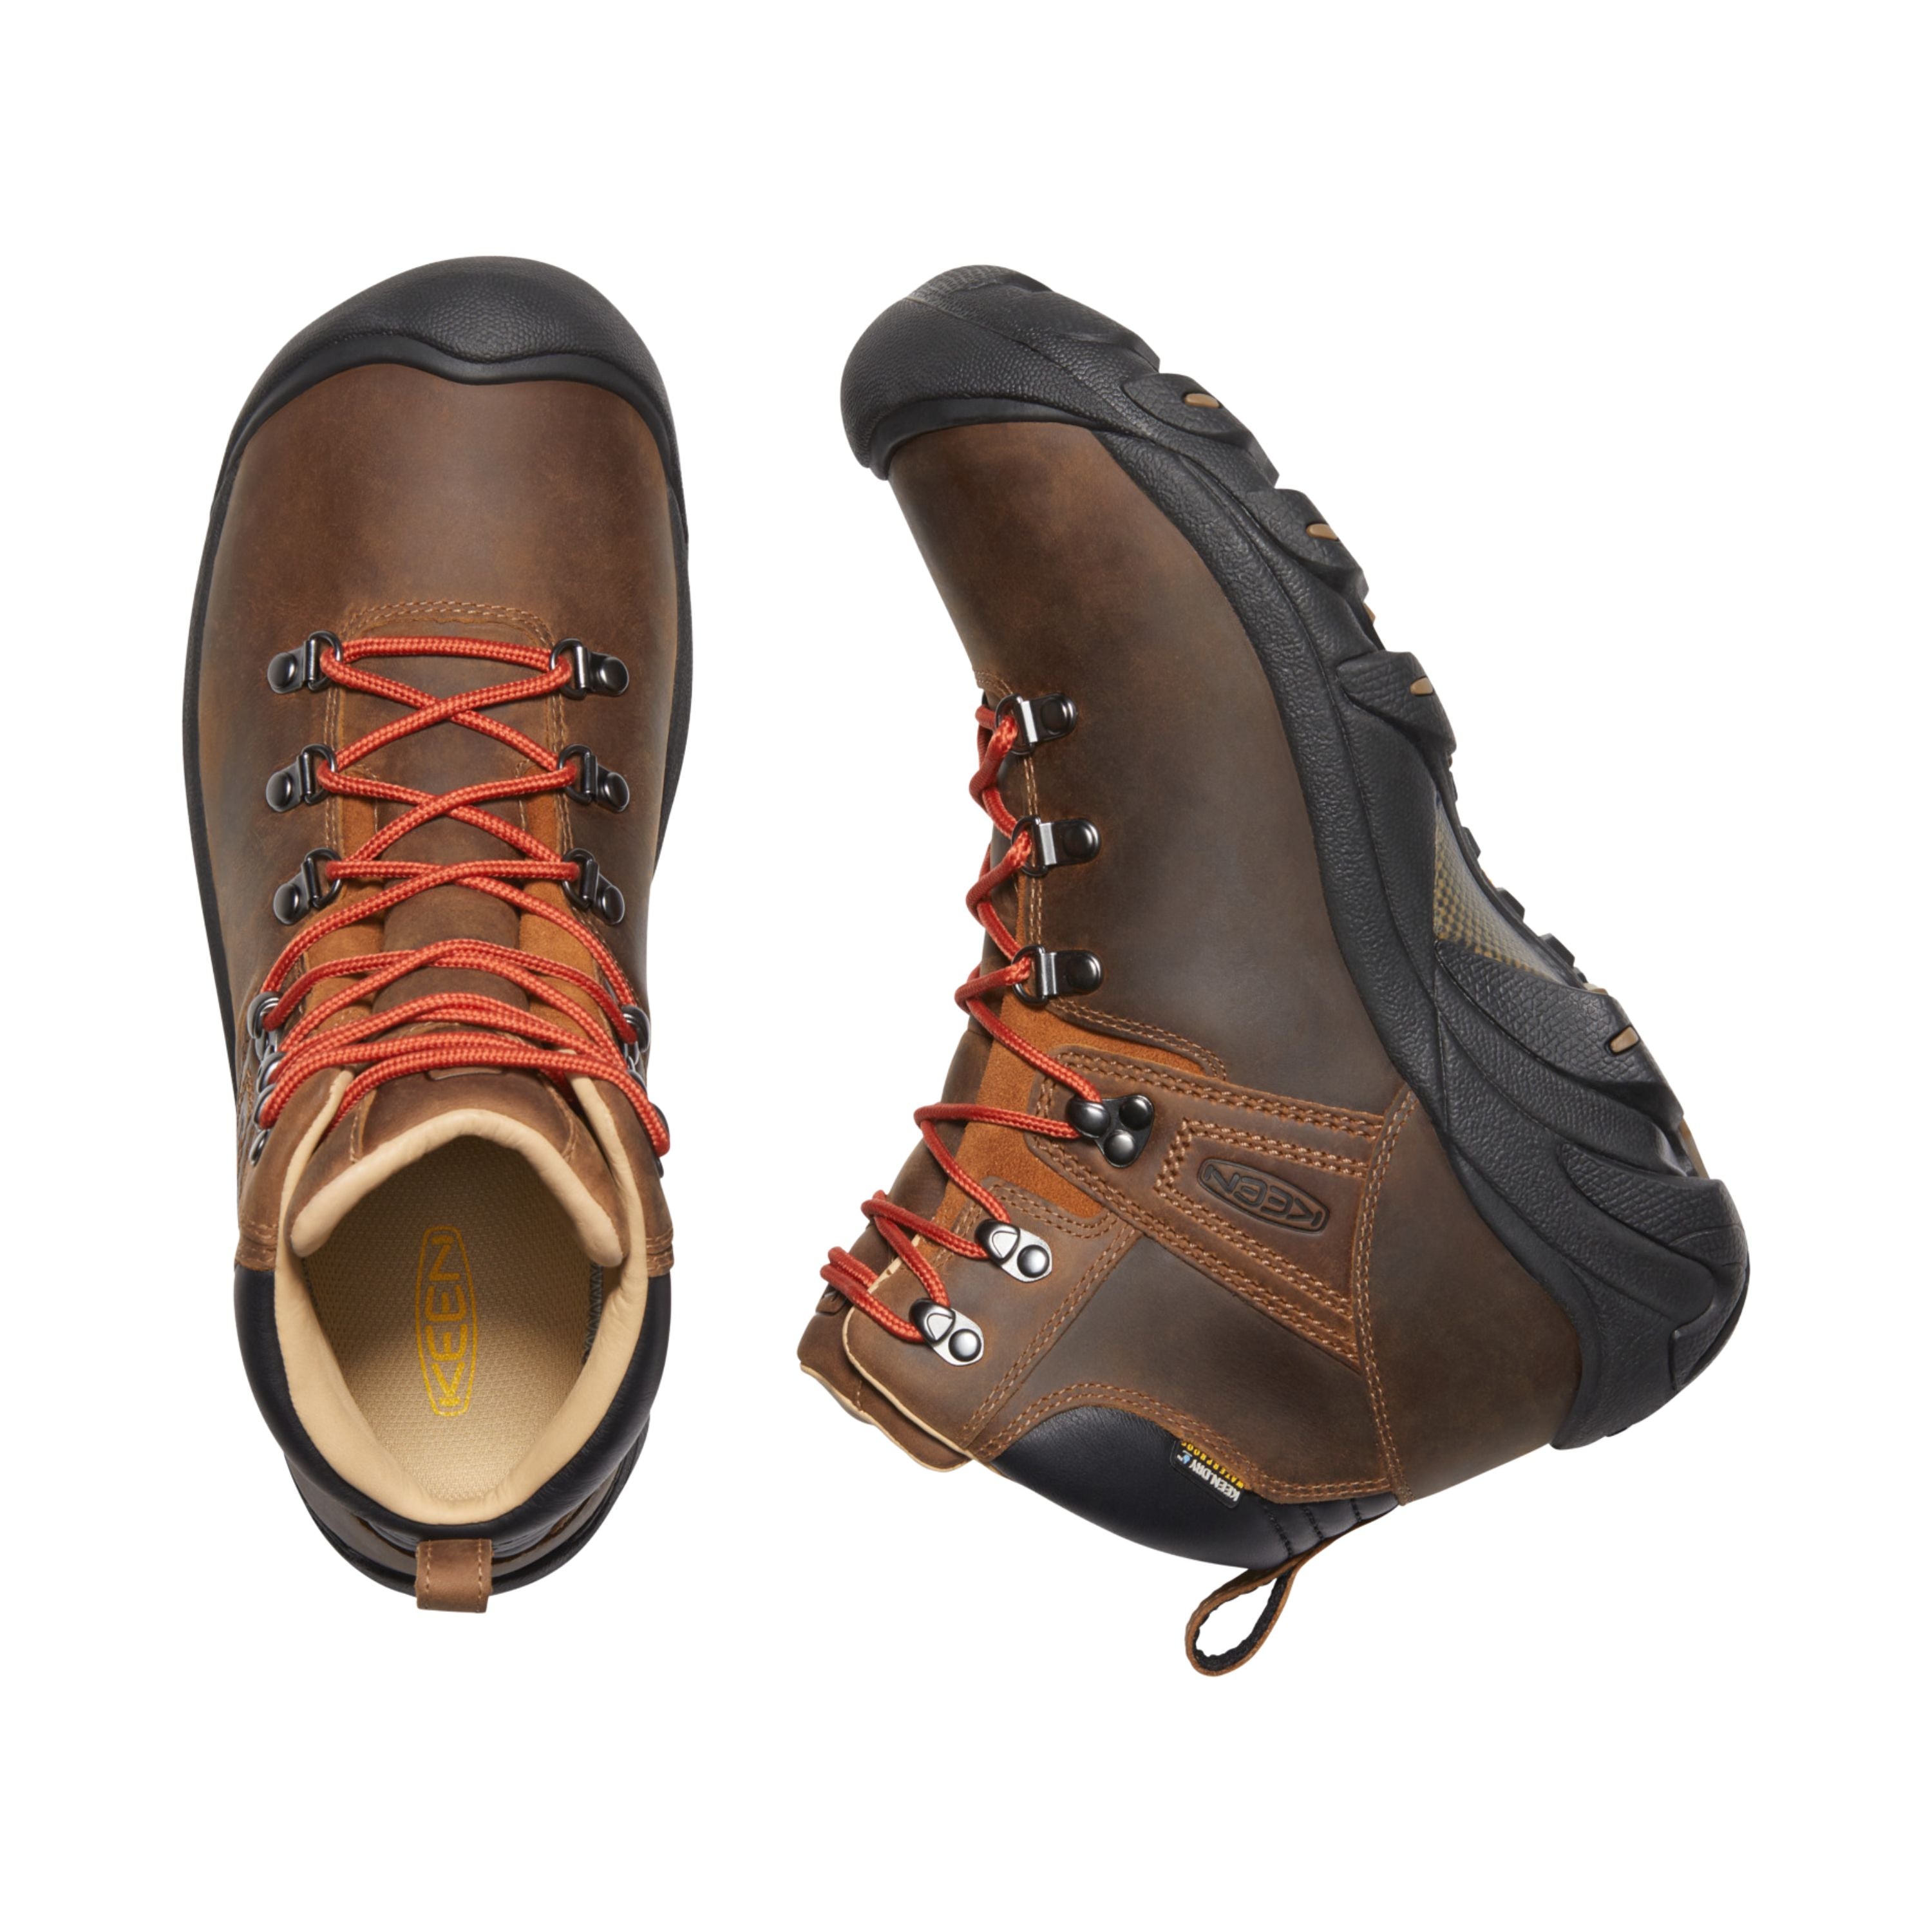 Bottes de randonnée "Pyrenees" - Femme||"Pyrenees" Hiking boots - Women's